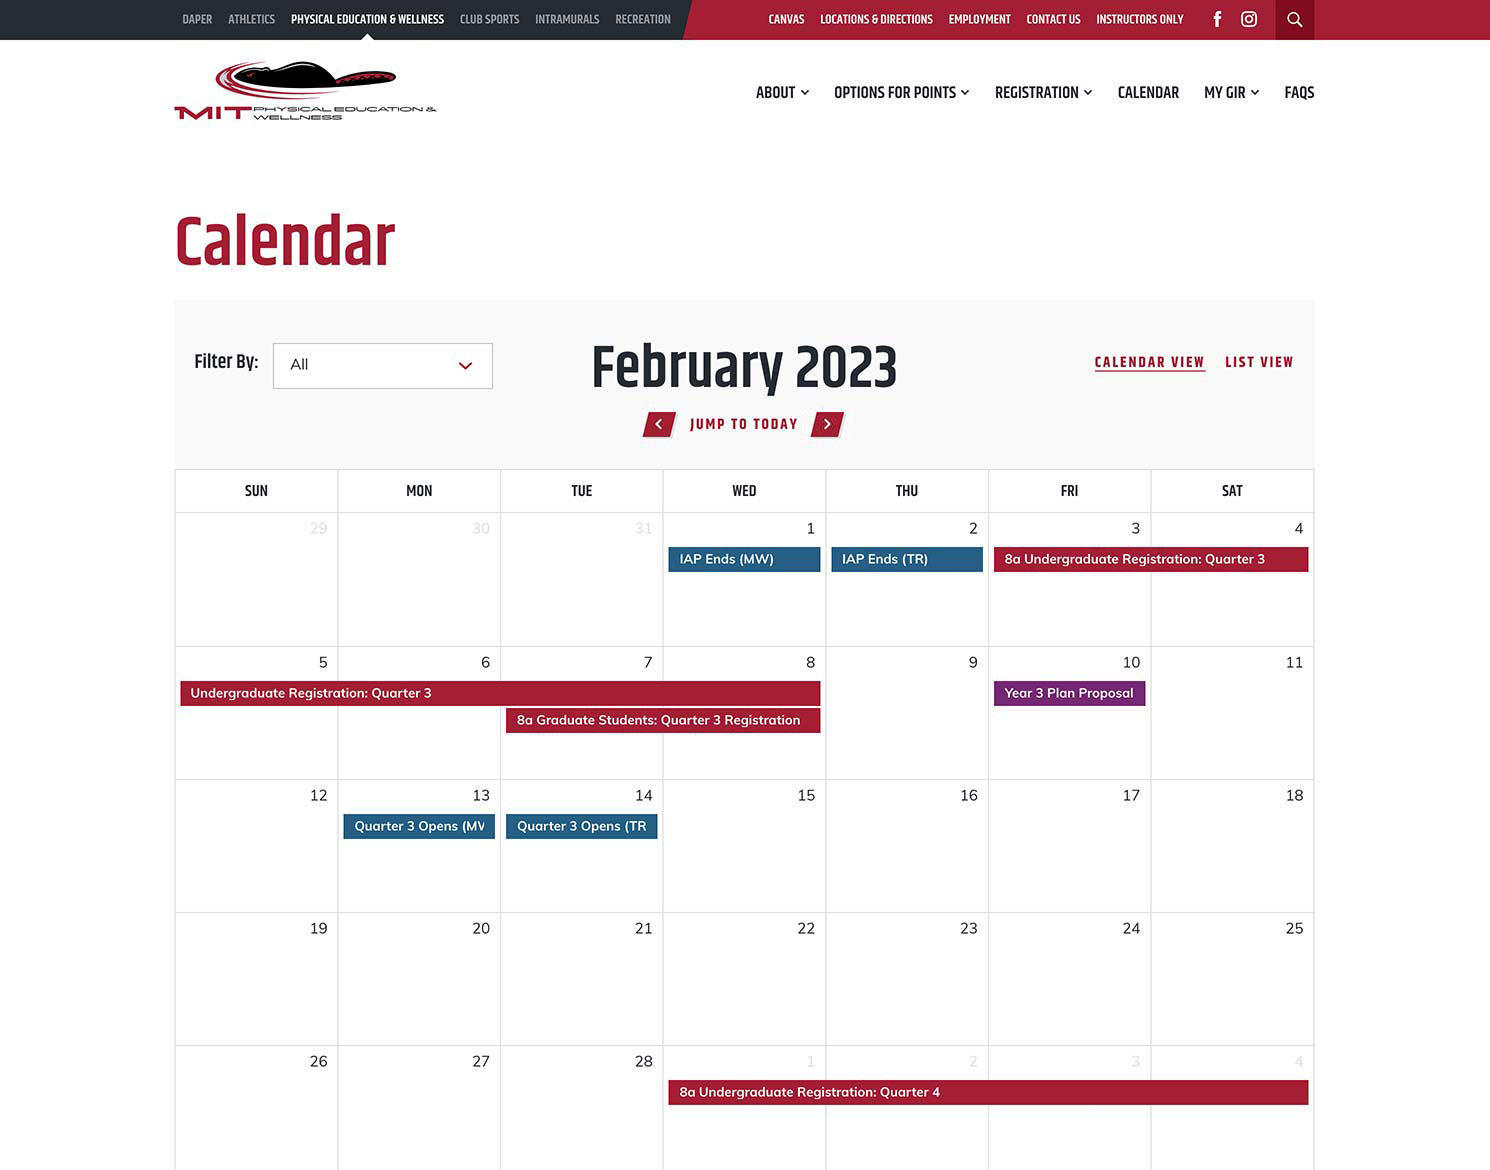 MIT DAPER Calendar page